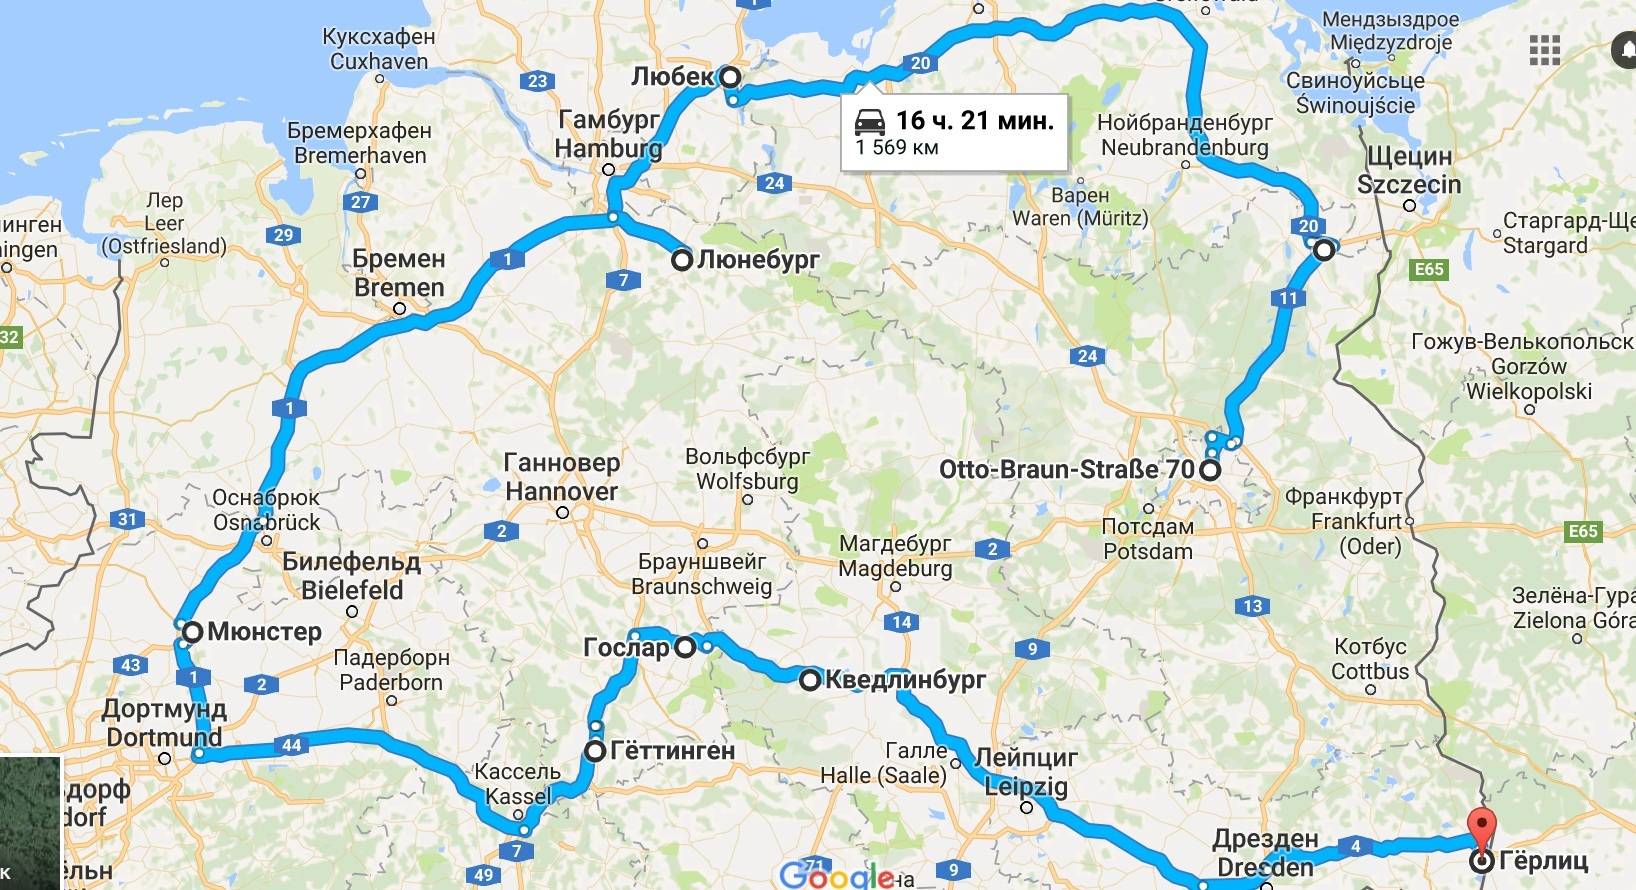 Как добраться из мюнхена в берлин: автобус, поезд, самолет, машина. расстояние, цены на билеты и расписание 2021 на туристер.ру